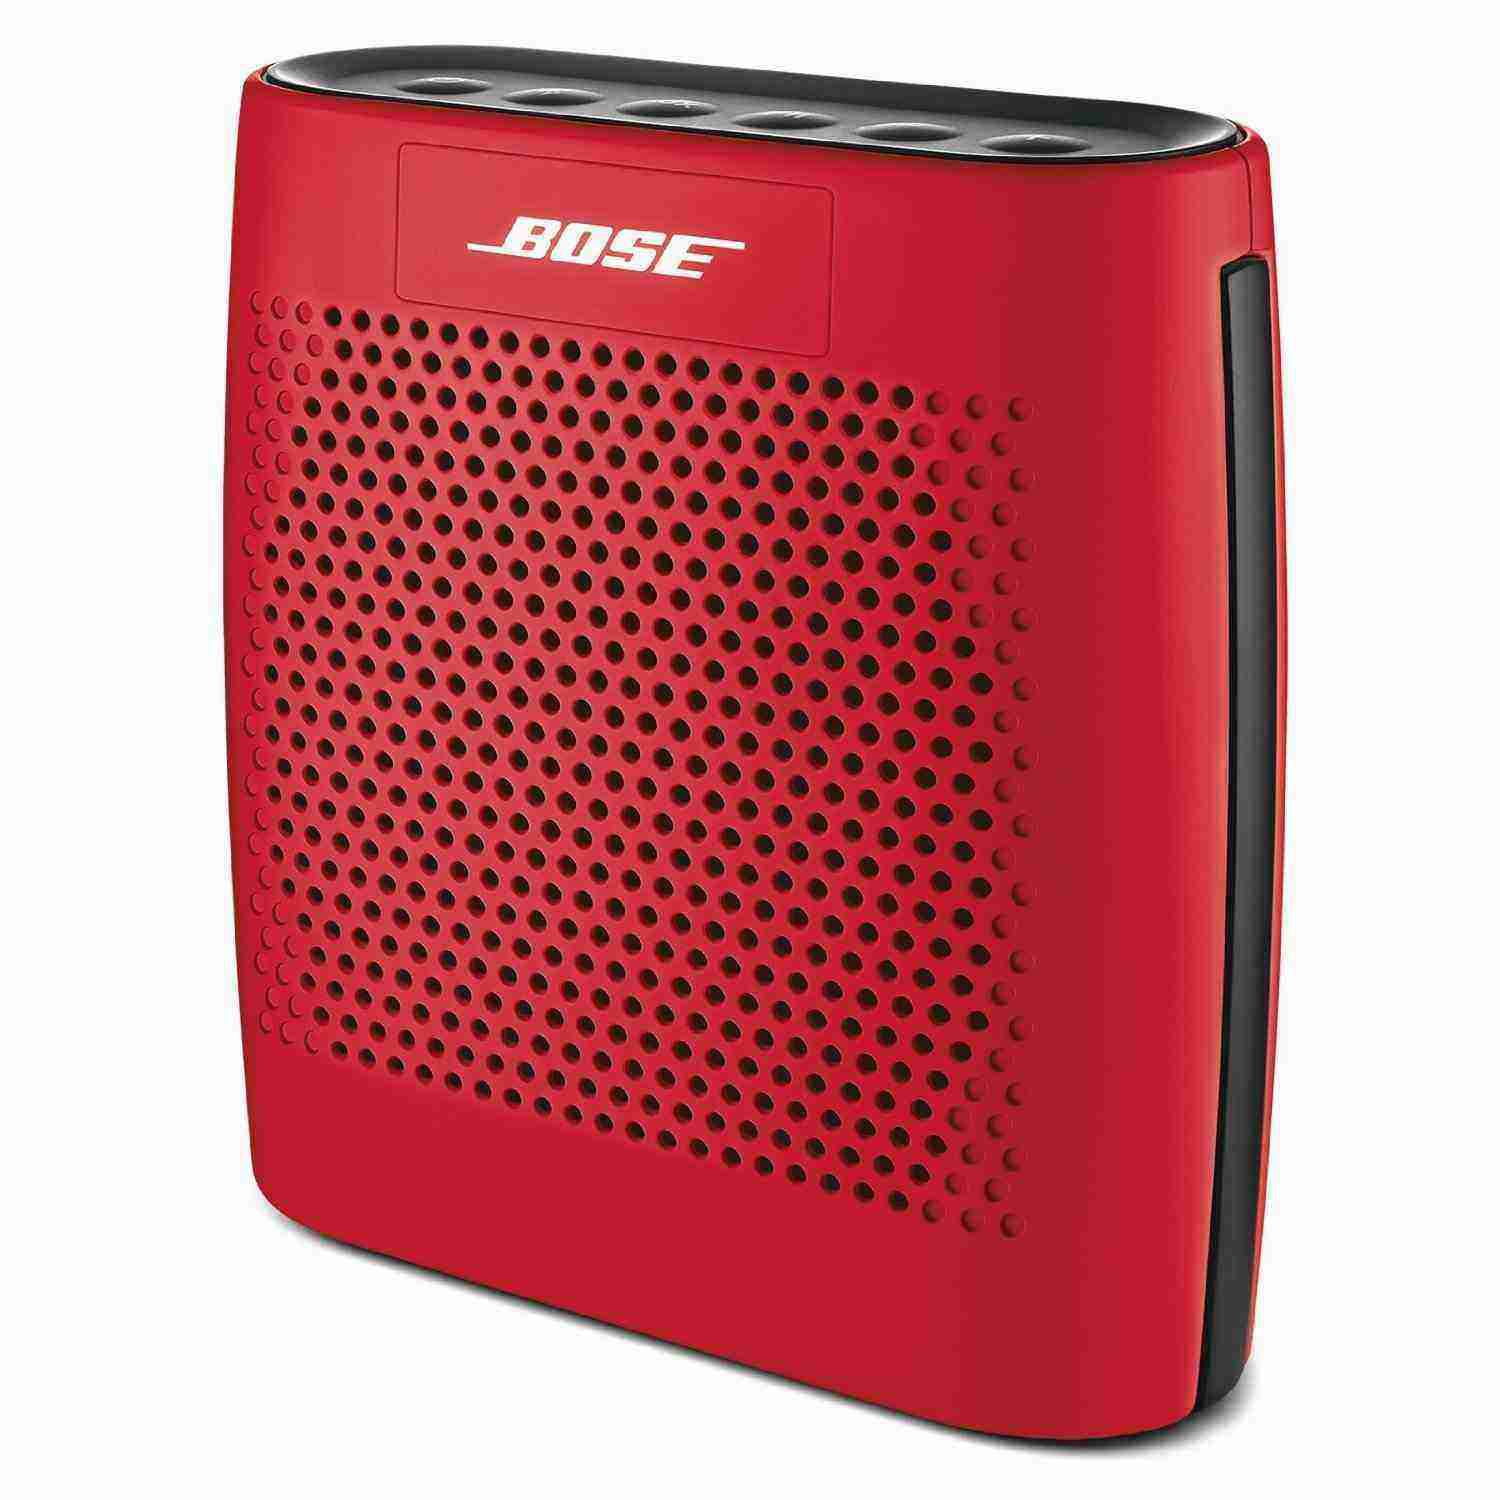 Bose SoundLink Color Bluetooth Speaker (Red) Buy Bose SoundLink Color